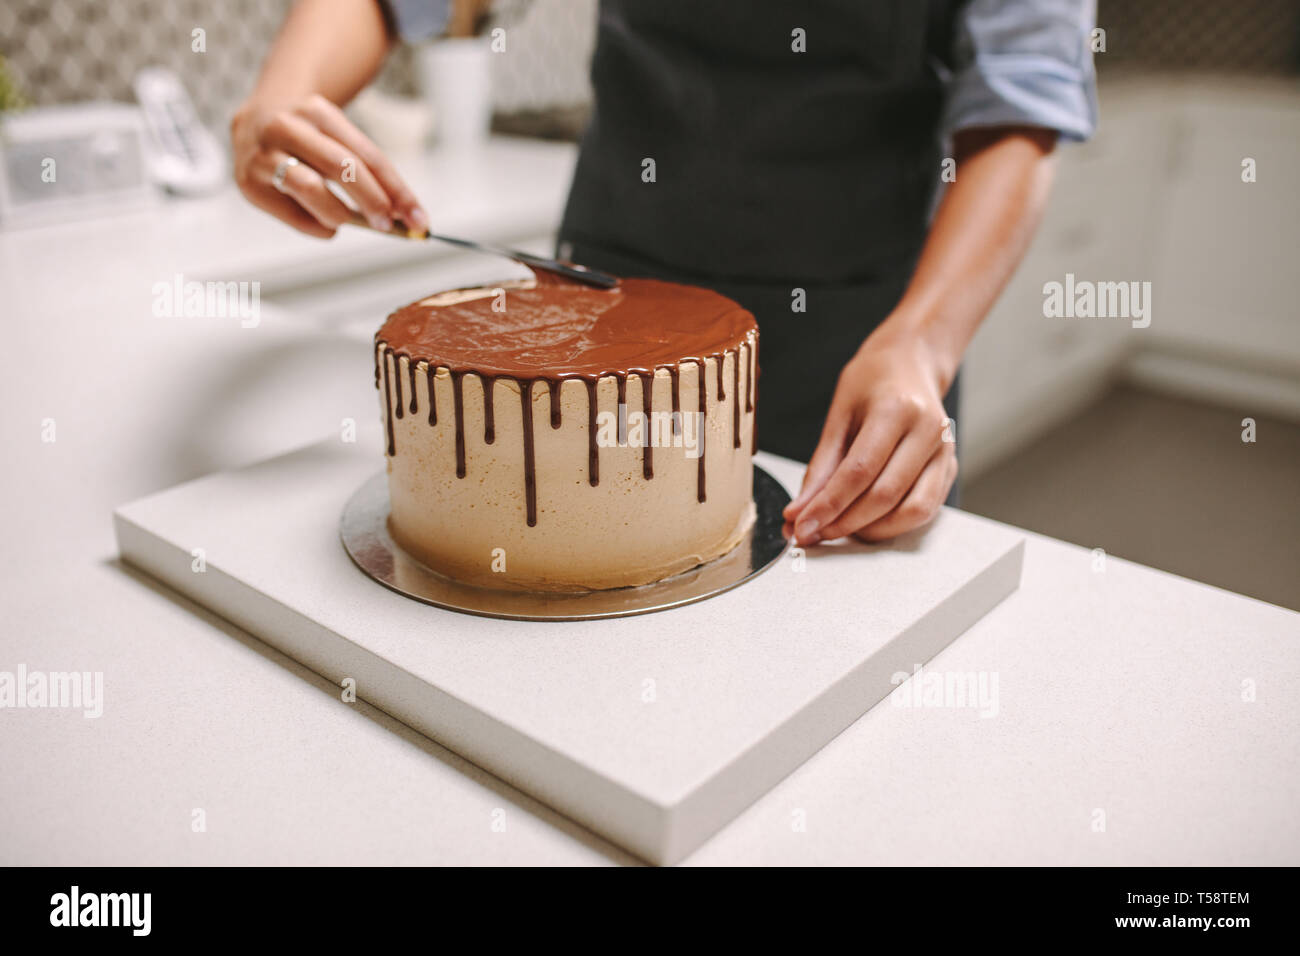 Chef pâtissier la préparation d'un gâteau dans la cuisine. Confiseur chocolat femelle répand le glaçage sur un gâteau. Banque D'Images